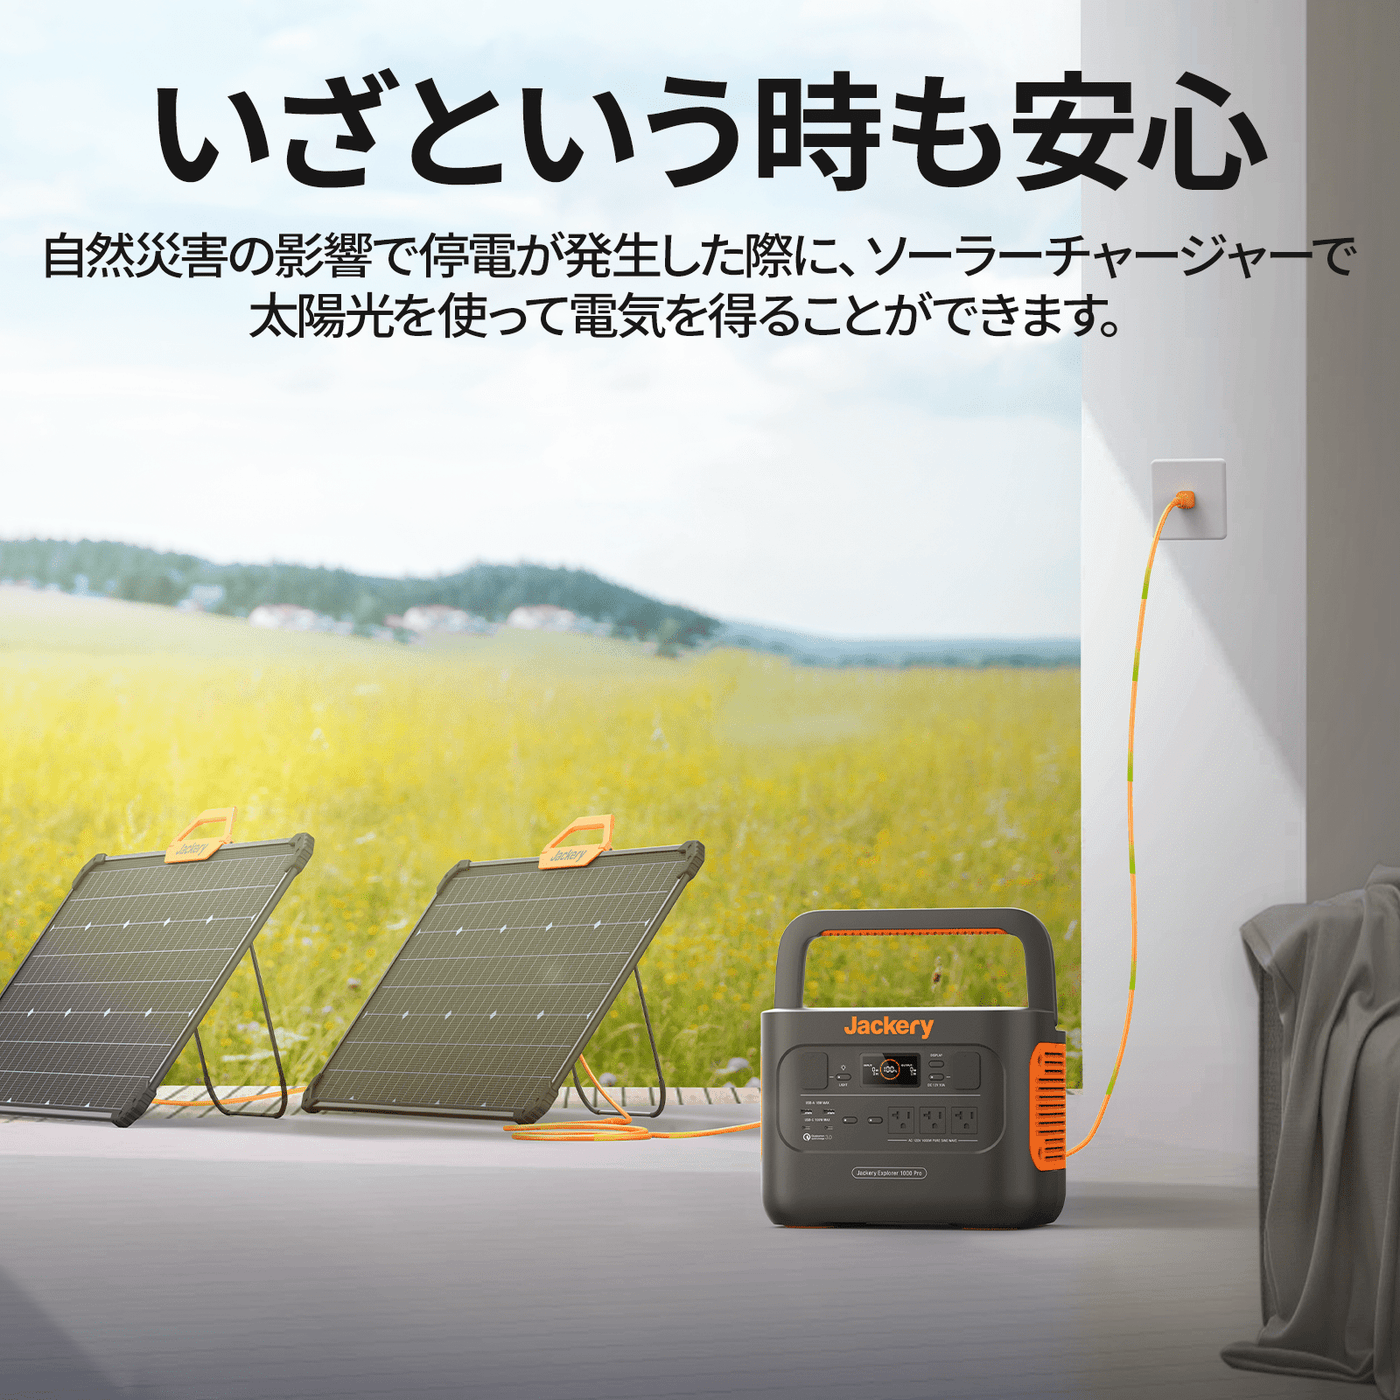 Jackery SolarSaga 80W ソーラーパネルは停電時に太陽光発電で必要な電力を生み出してくれる